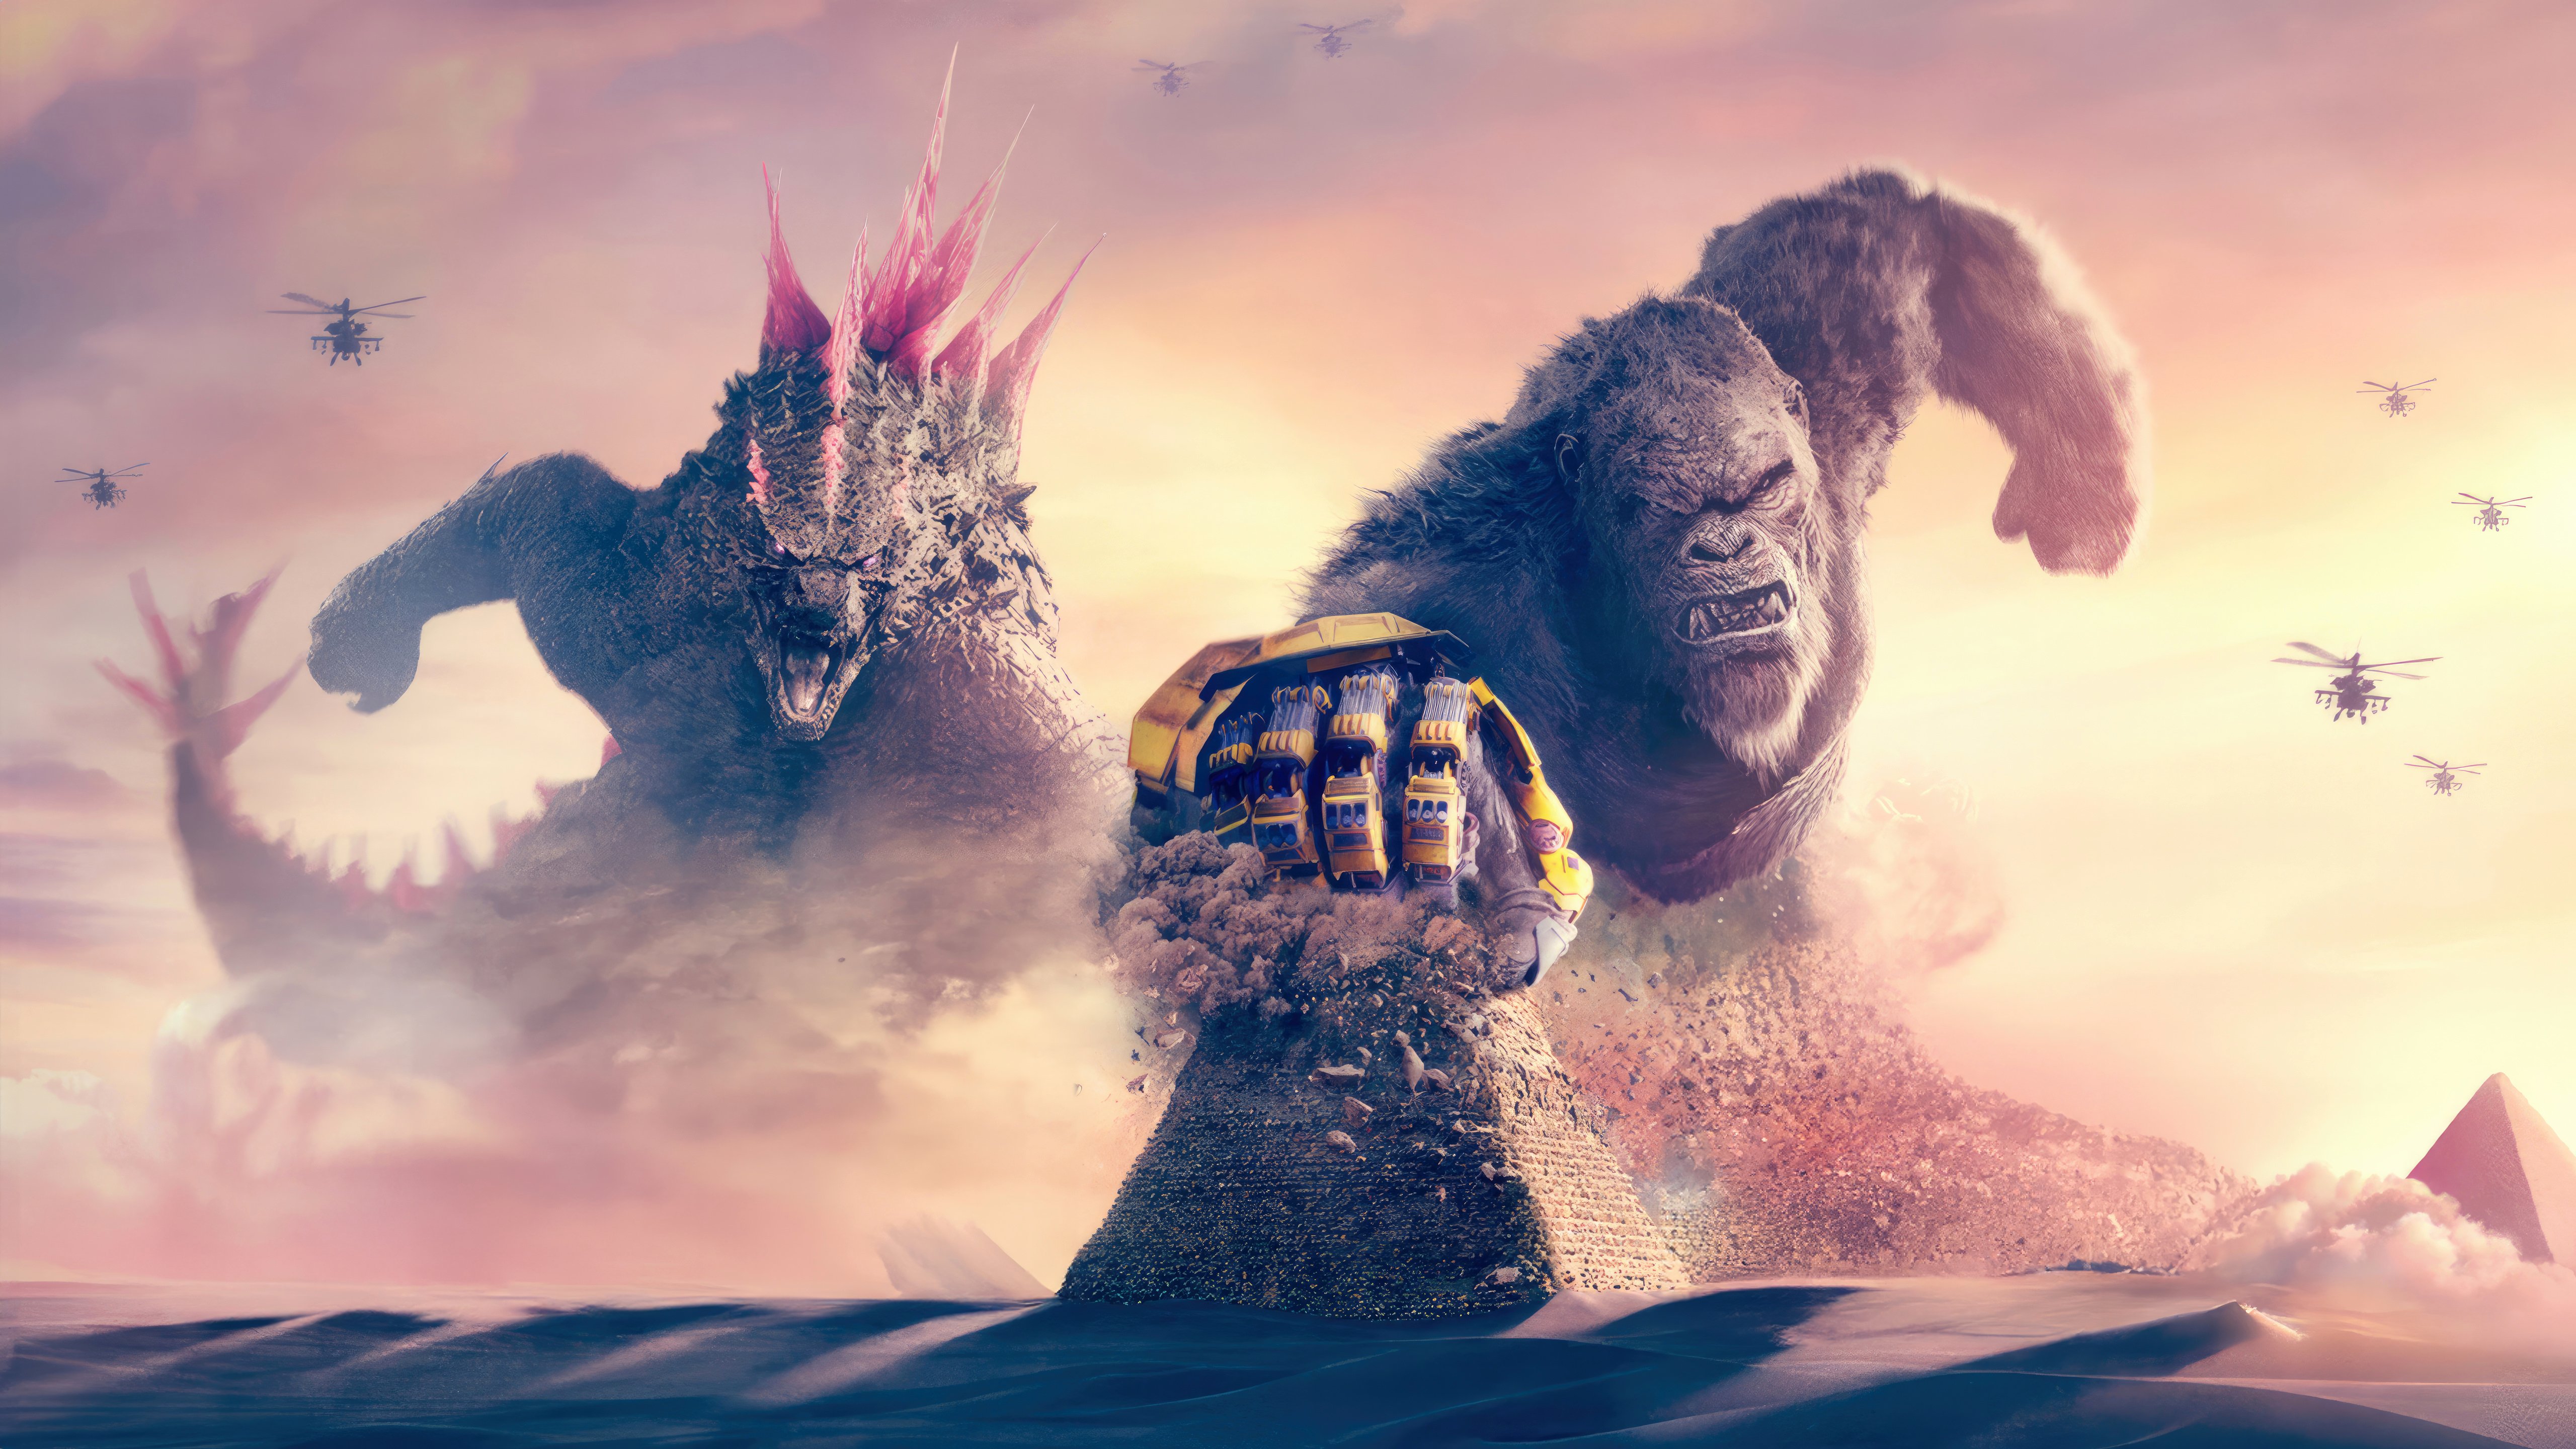 Fondos de pantalla Godzilla y Kong El nuevo imperio